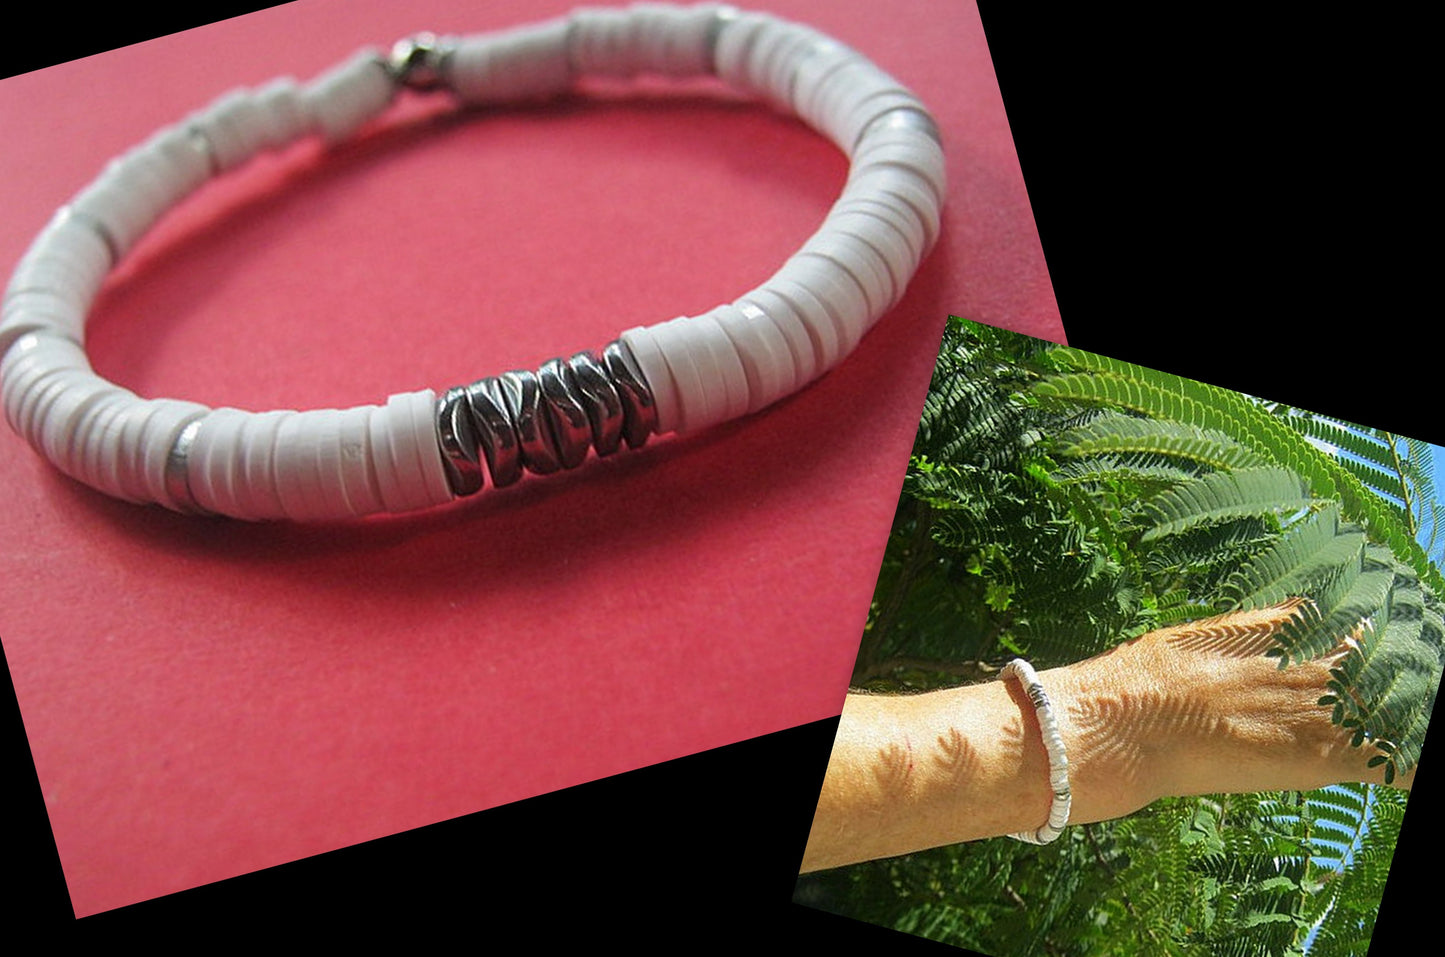 Men Bracelet white african style disc heishi silver hematite Protection stone, handmade bracelet men gift